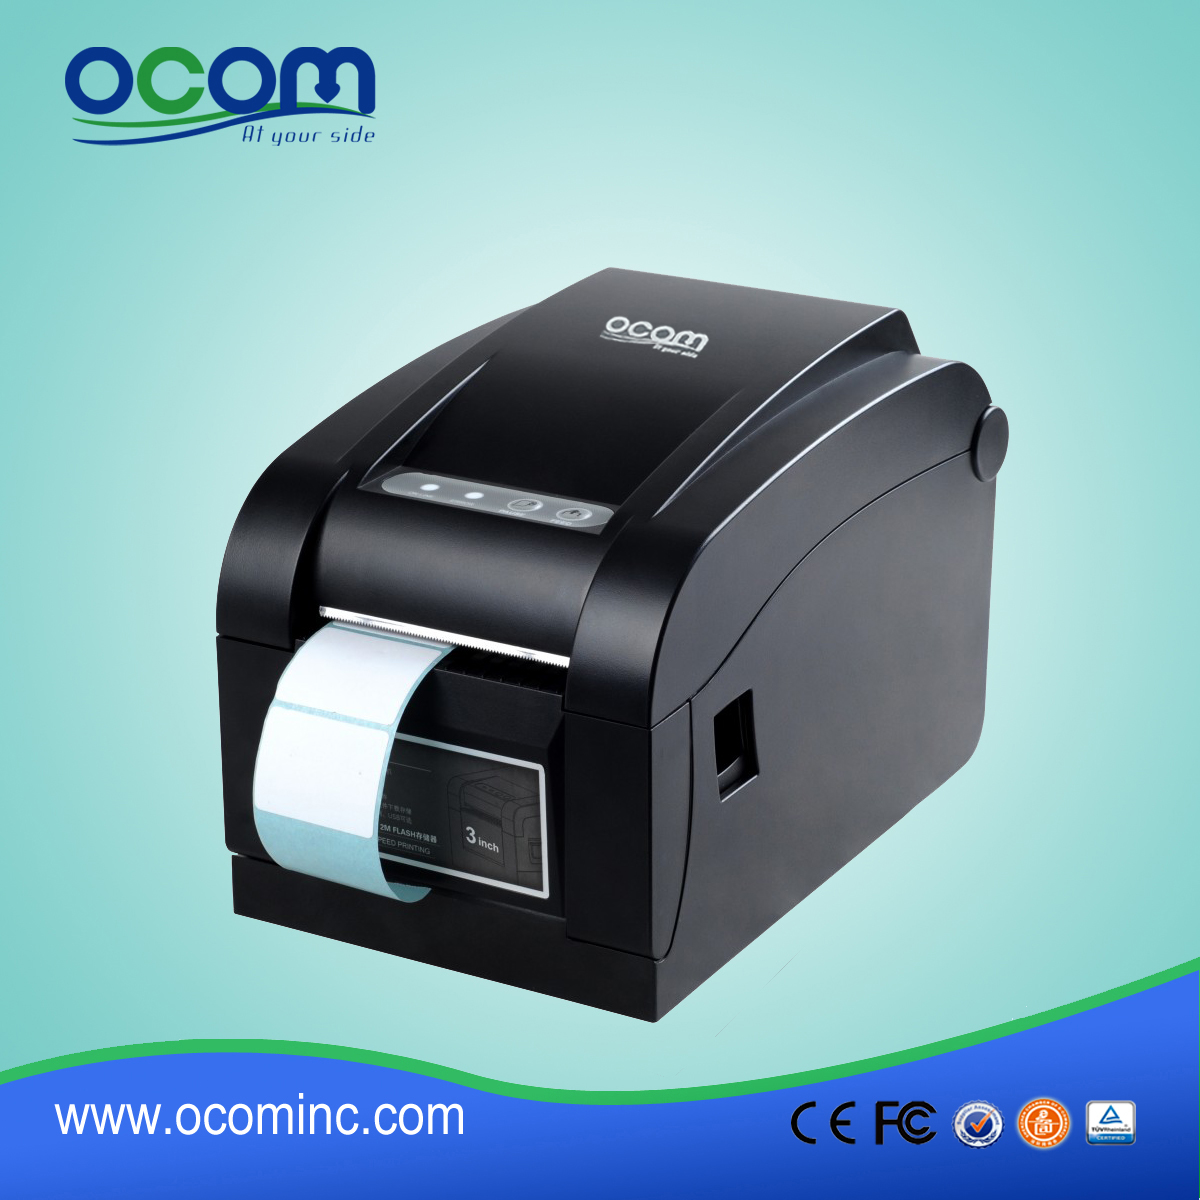 Impresora de etiquetas de alta velocidad compatible con los comandos de impresión ESC / POS establecidos